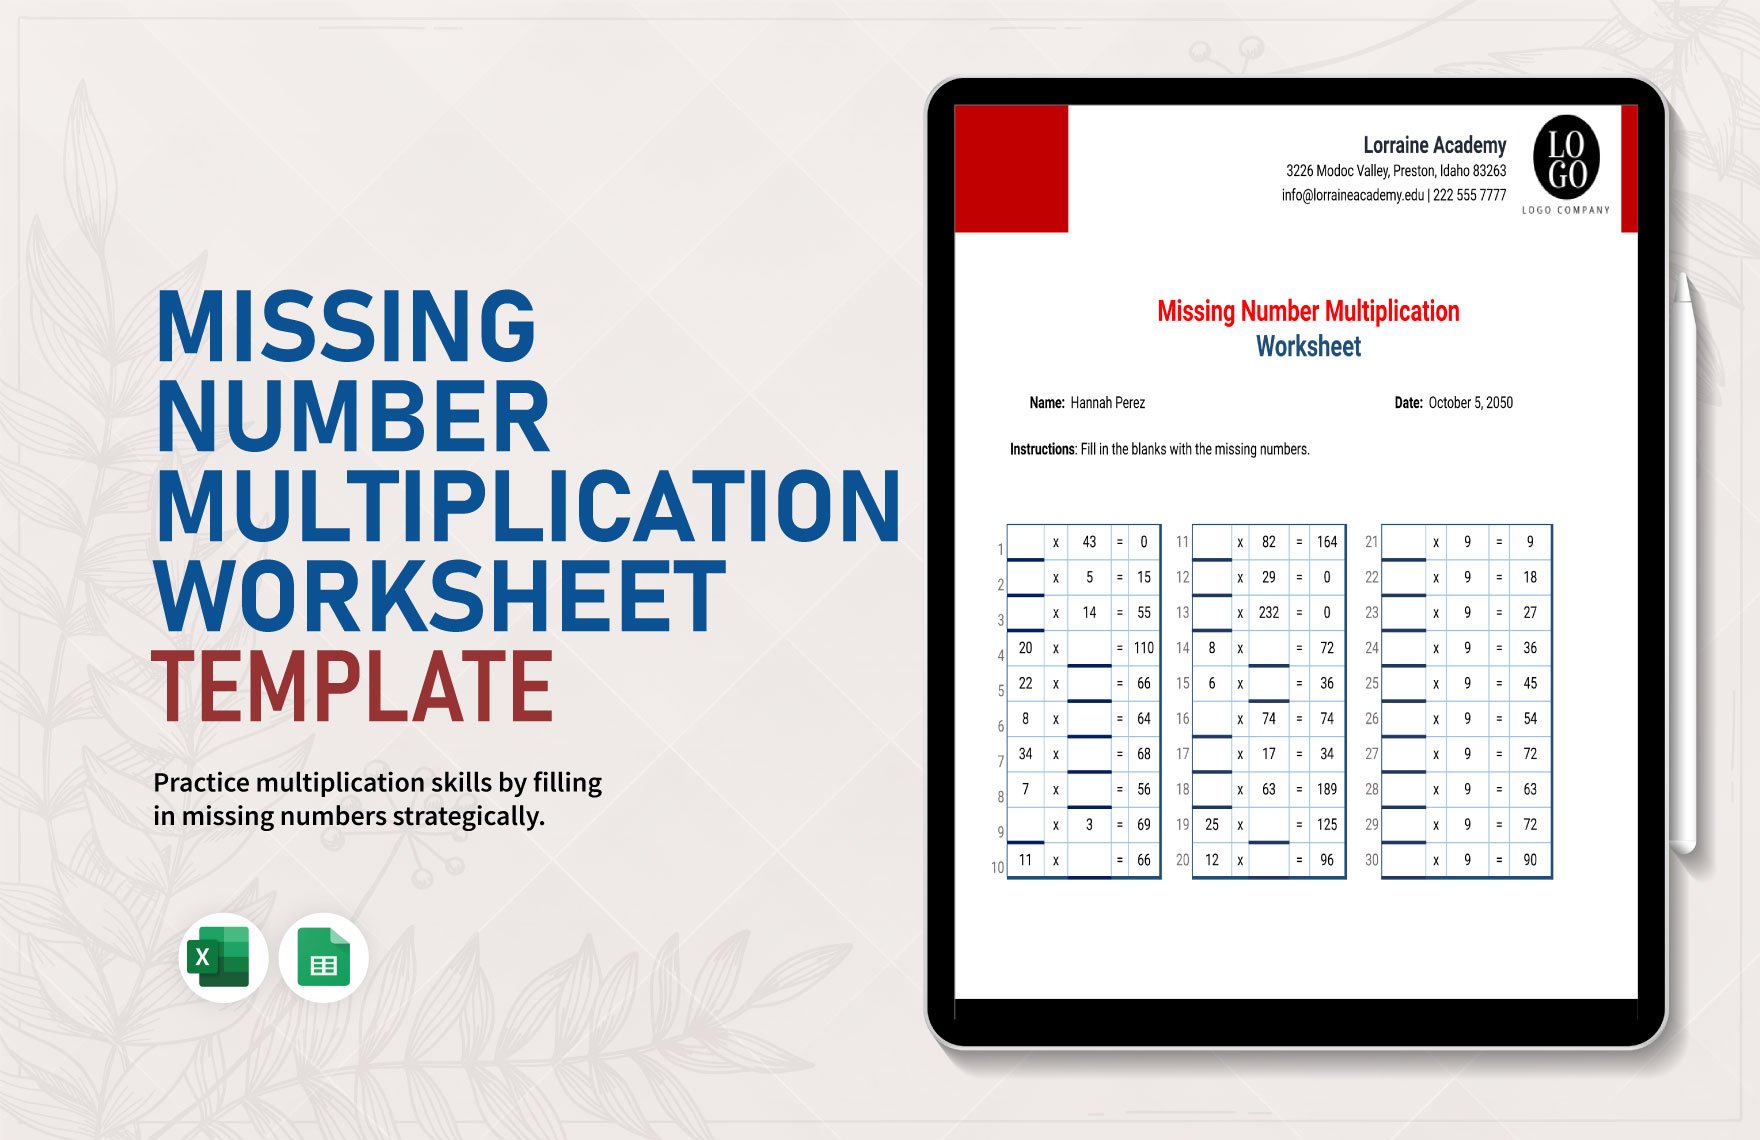 Missing Number Multiplication Worksheet in Excel, Google Sheets